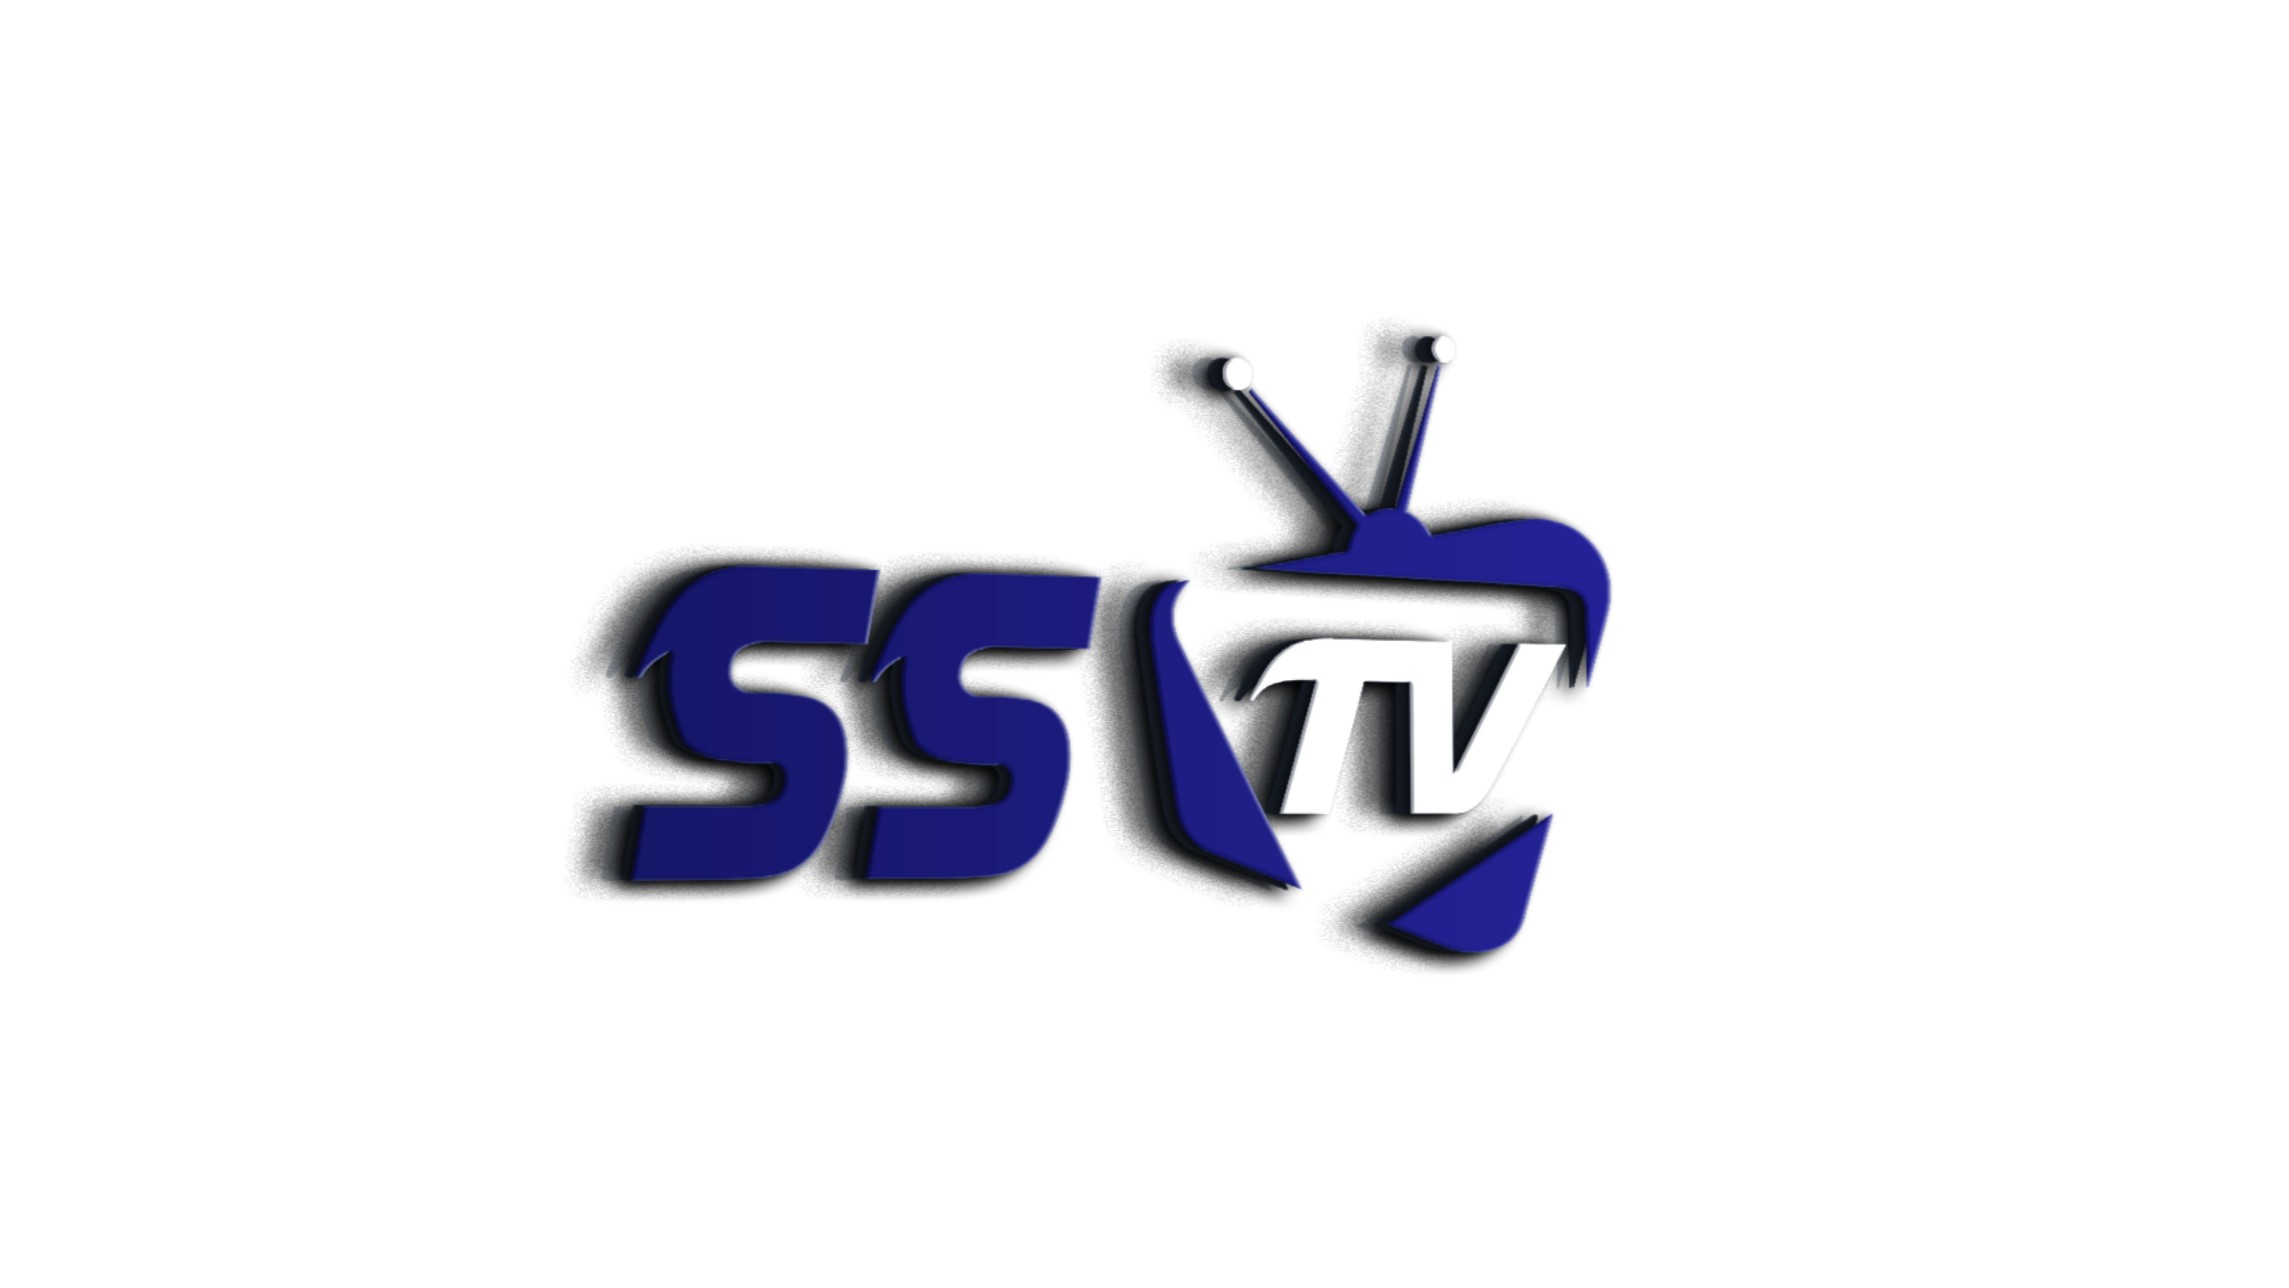 SSTV fanart